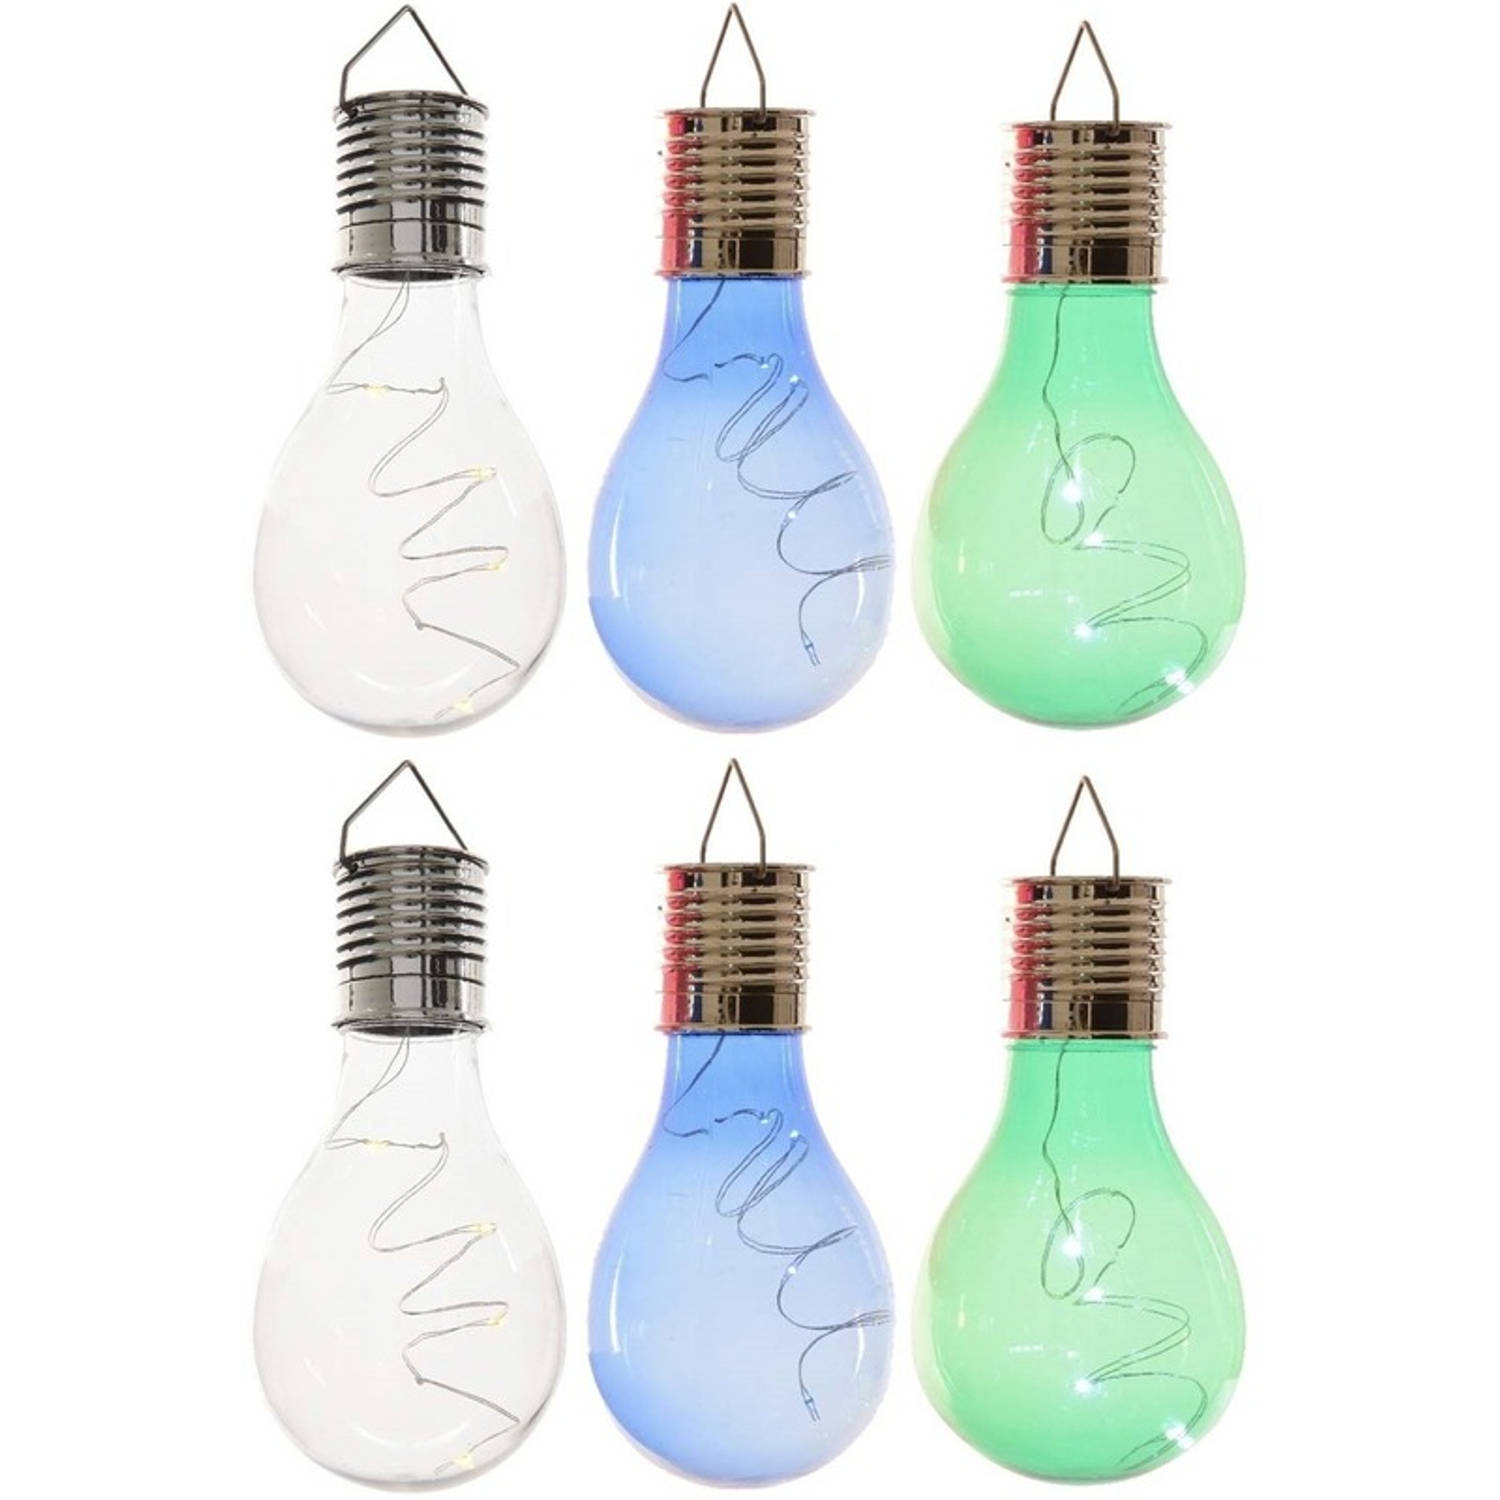 6x Buitenlampen/tuinlampen lampbolletjes/peertjes 14 cm transparant/blauw/groen - Buitenverlichting